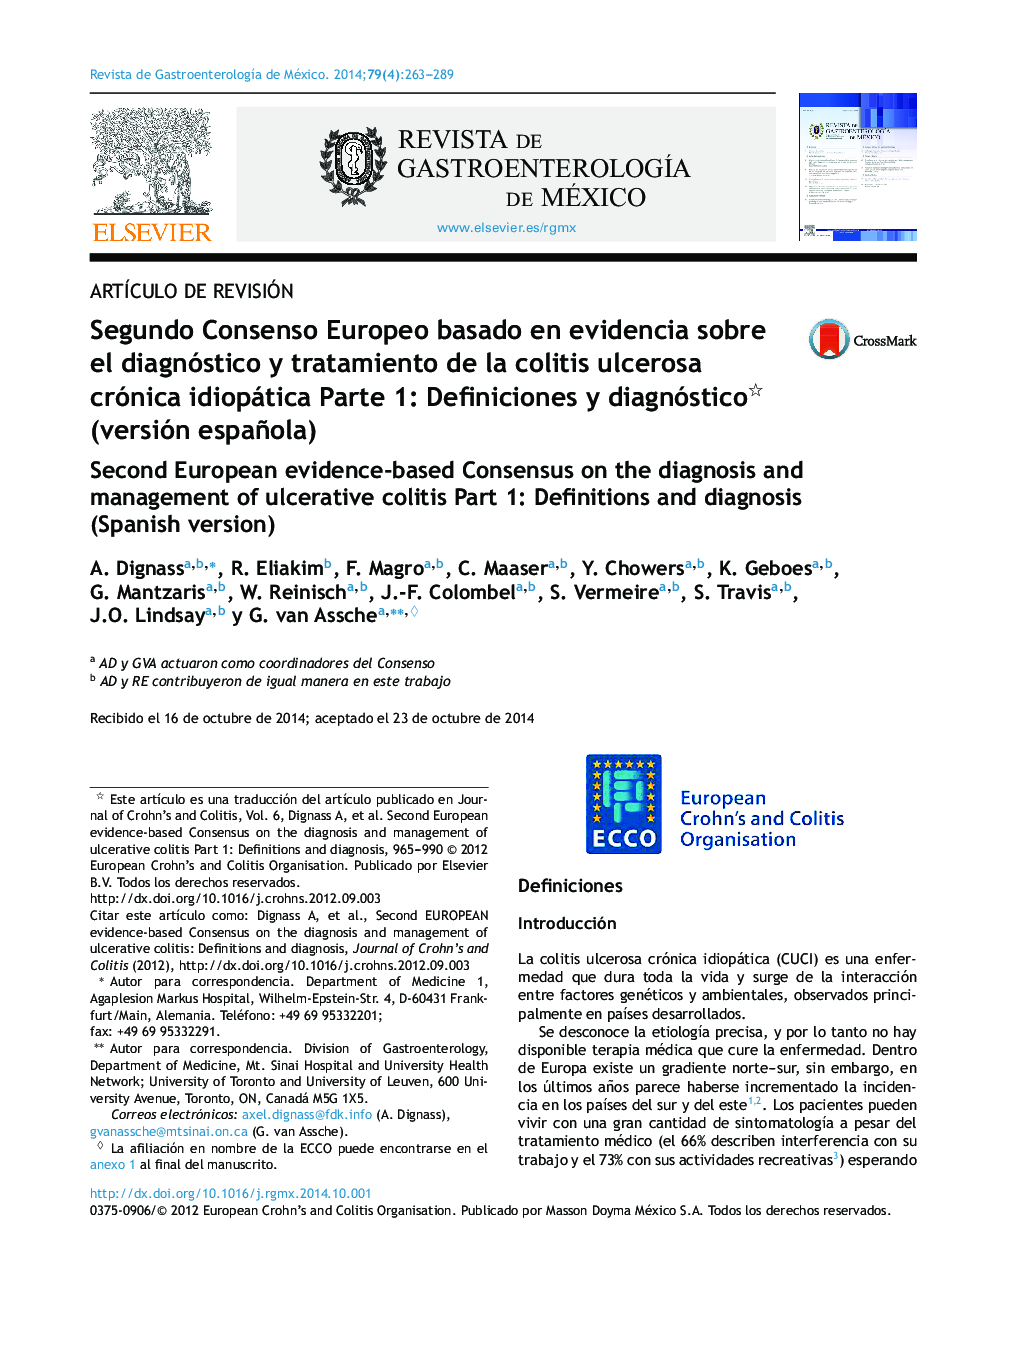 Segundo Consenso Europeo basado en evidencia sobre el diagnóstico y tratamiento de la colitis ulcerosa crónica idiopática Parte 1: Definiciones y diagnóstico (versión española)